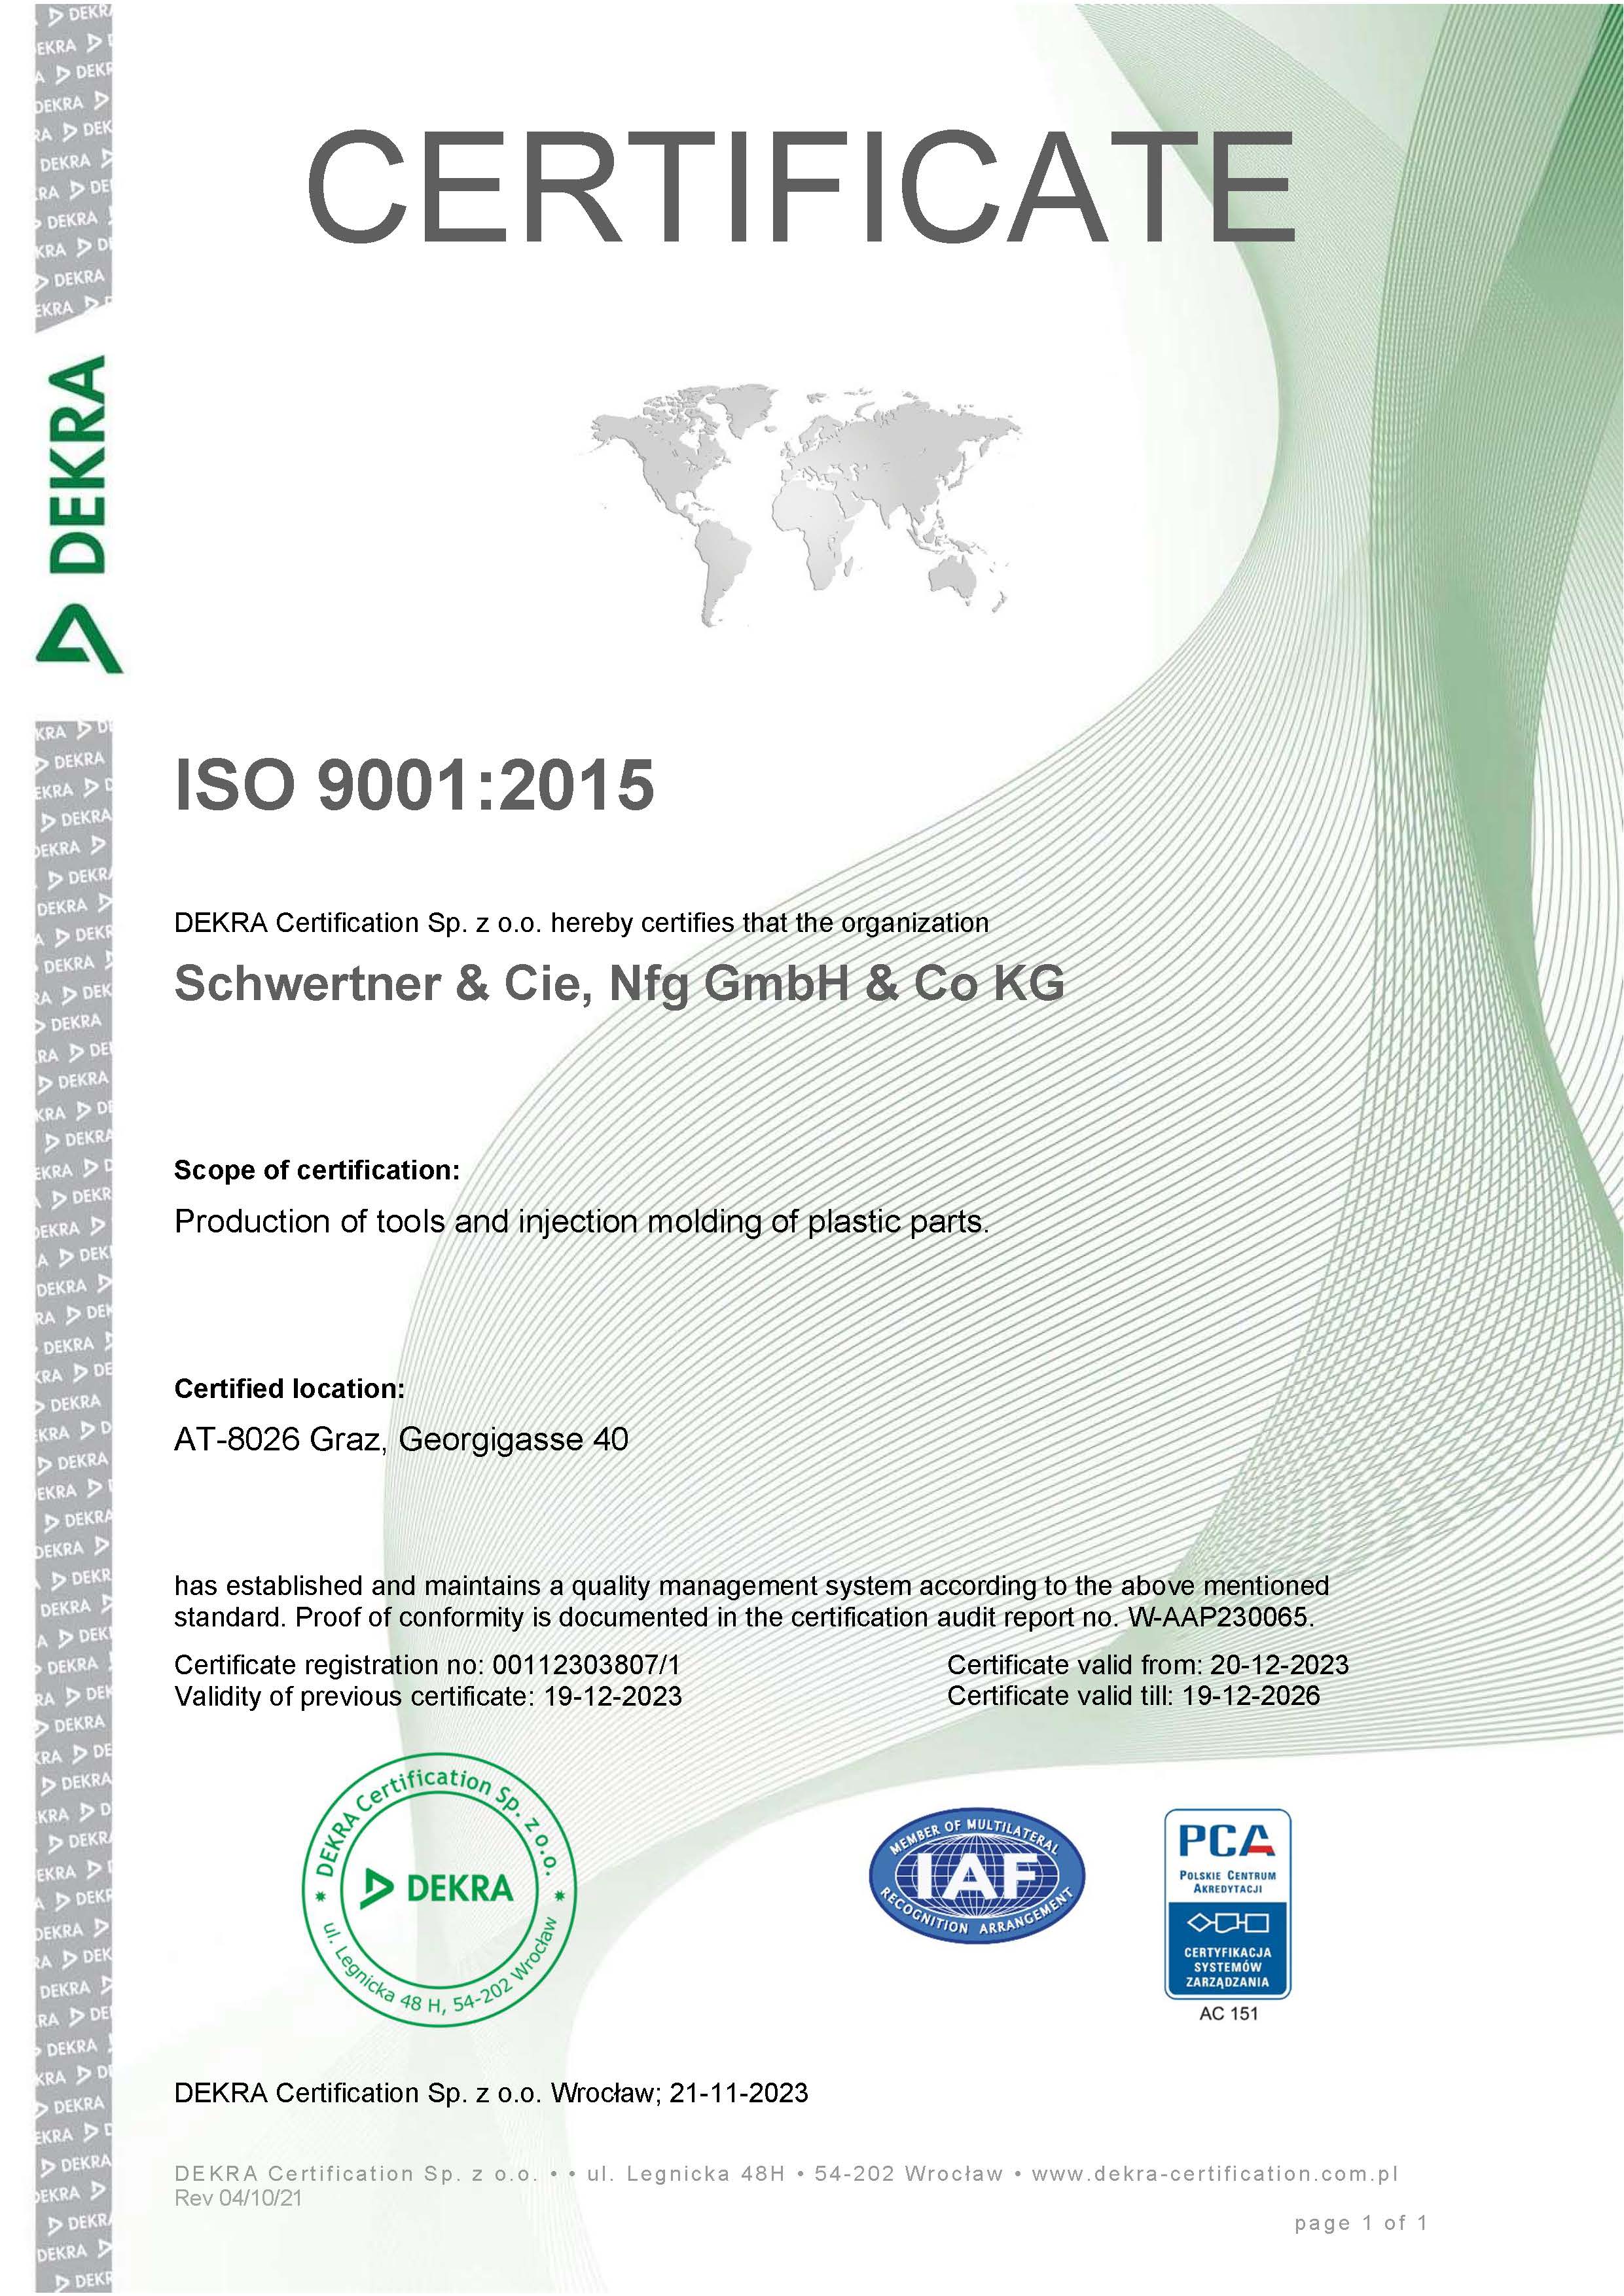 Schwertner certificate Iso 9001:2015